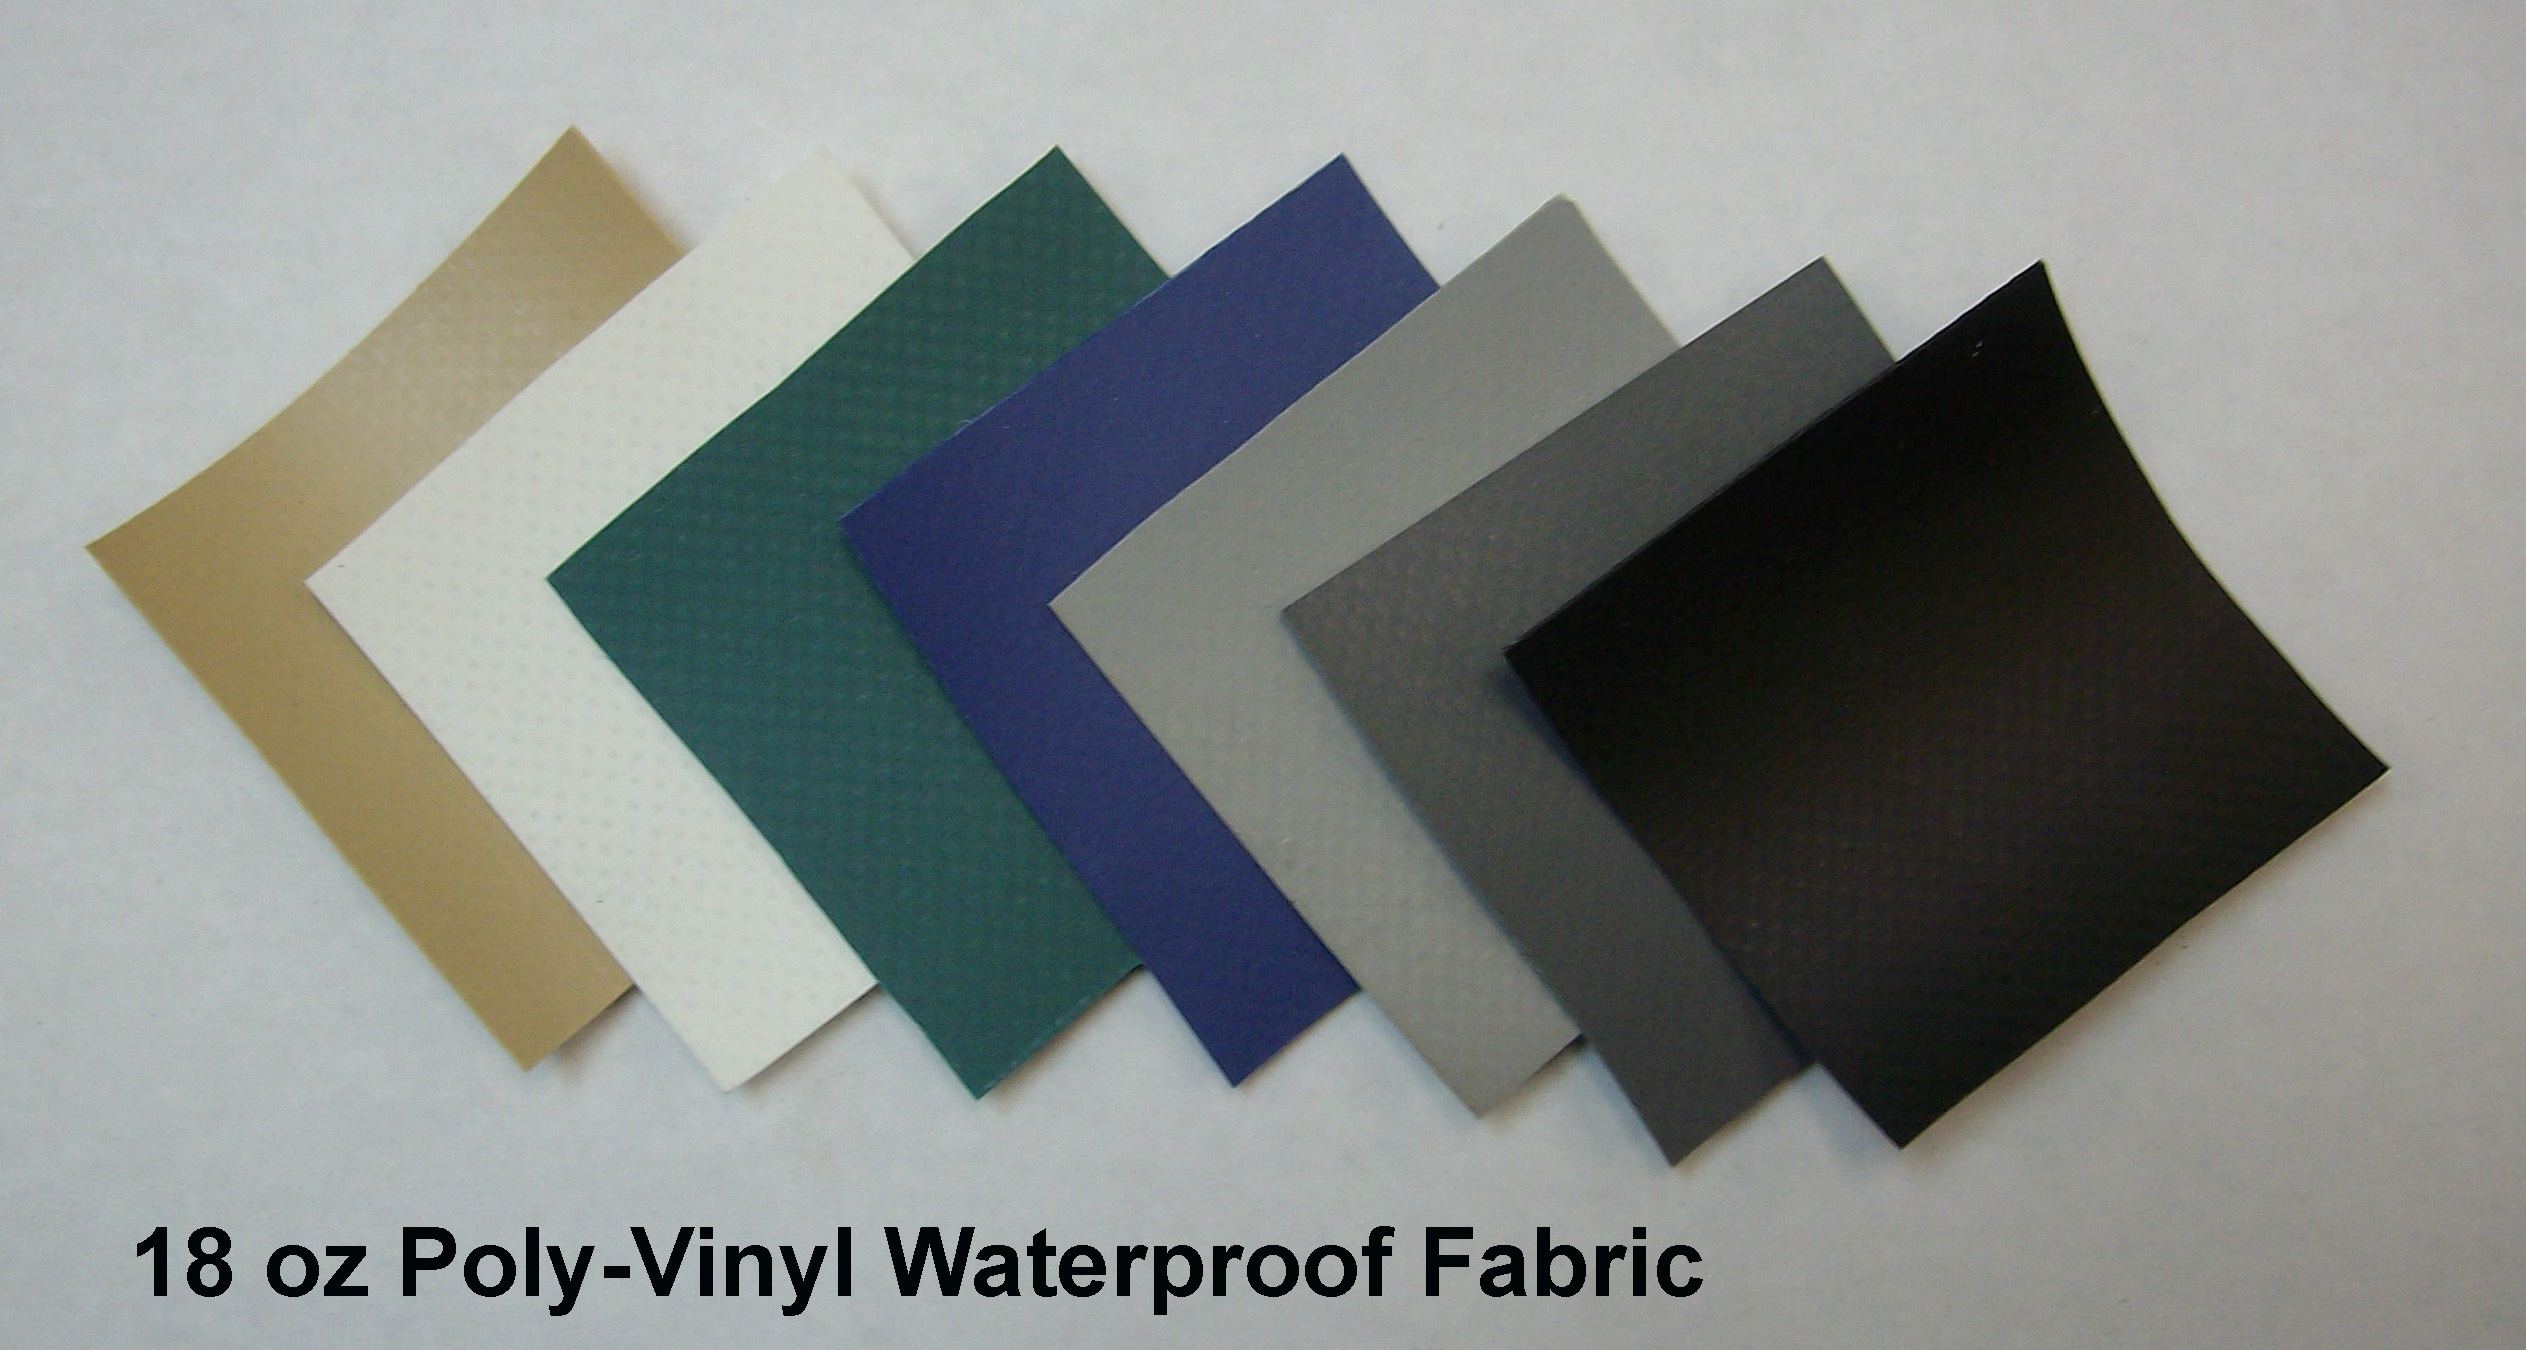 Heavy poly-vinyl waterproof